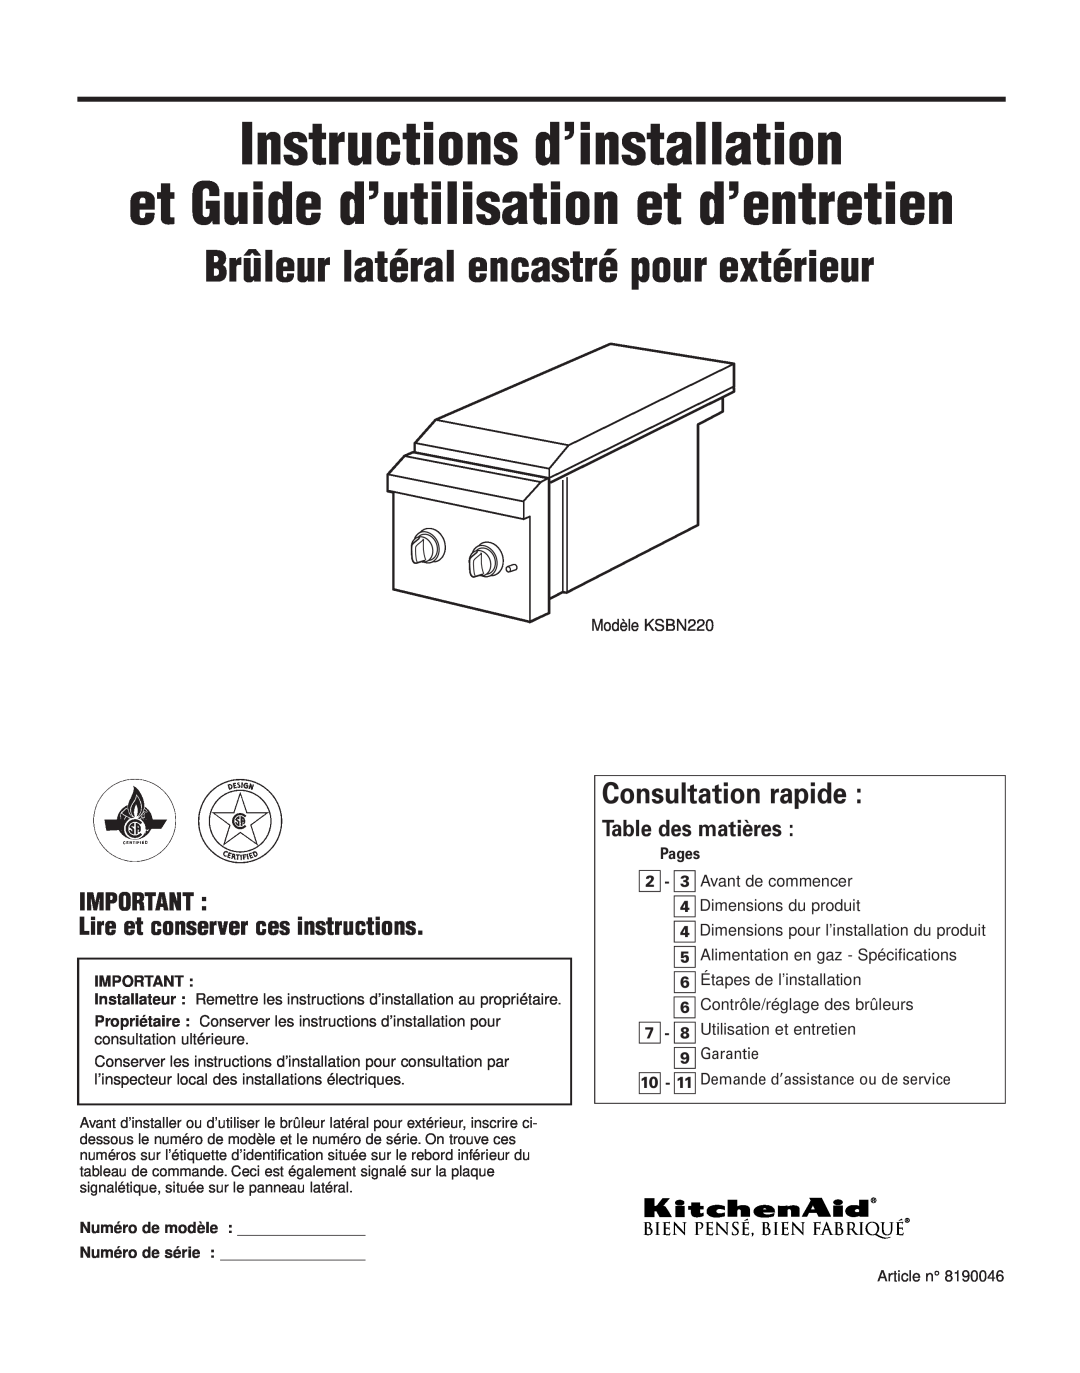 KitchenAid KSBN220 Instructions d’installation, Brûleur latéral encastré pour extérieur, Consultation rapide, Pages 